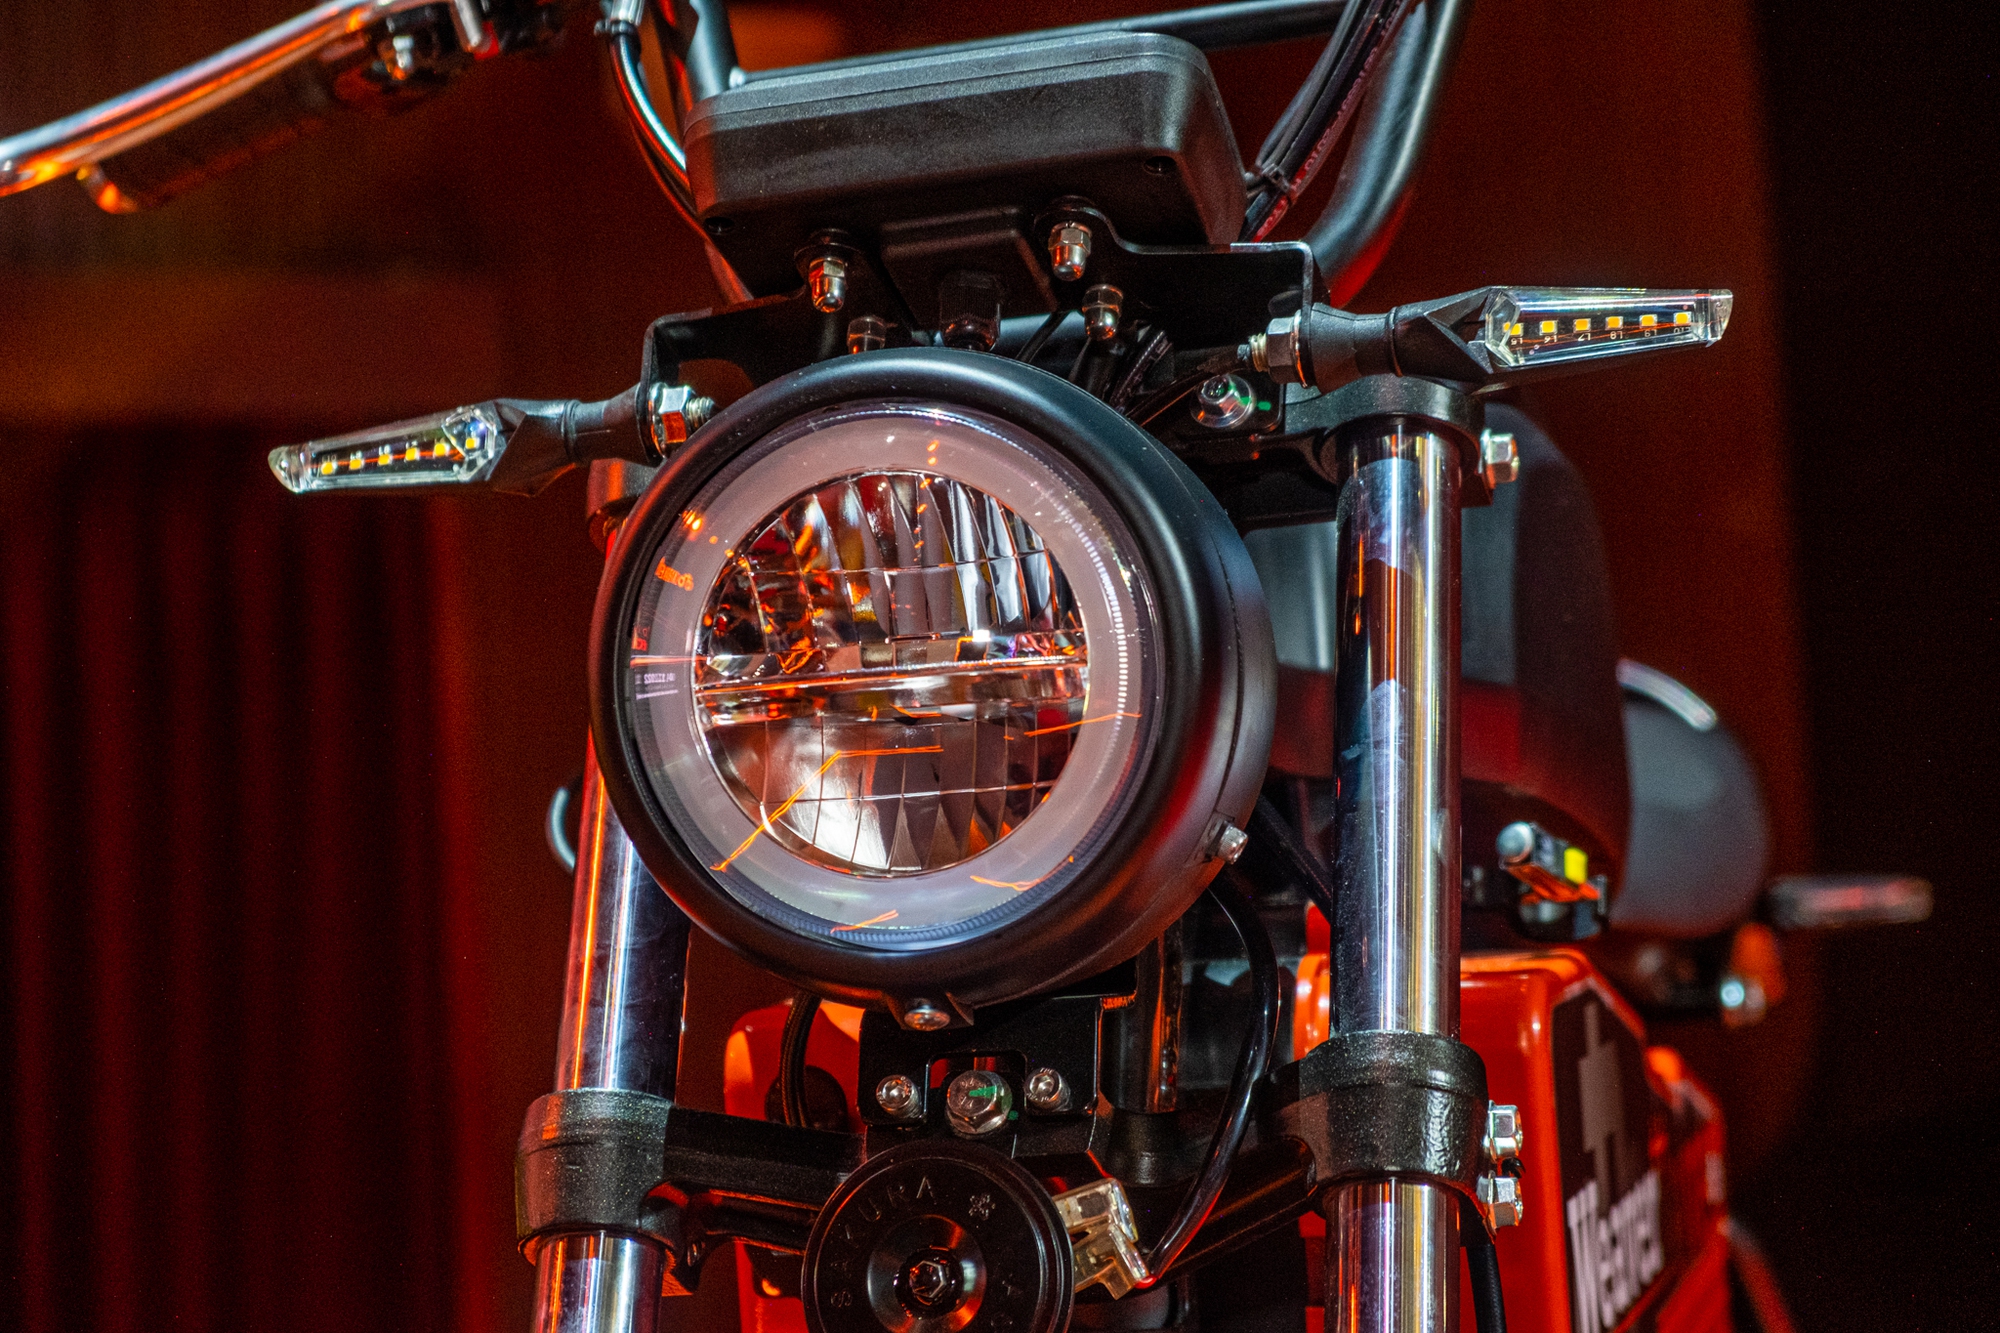 Ra mắt Dat Bike Weaver++: Giá 65,9 triệu đồng, dáng cổ điển, sạc nhanh chưa từng có tại Việt Nam - Ảnh 10.